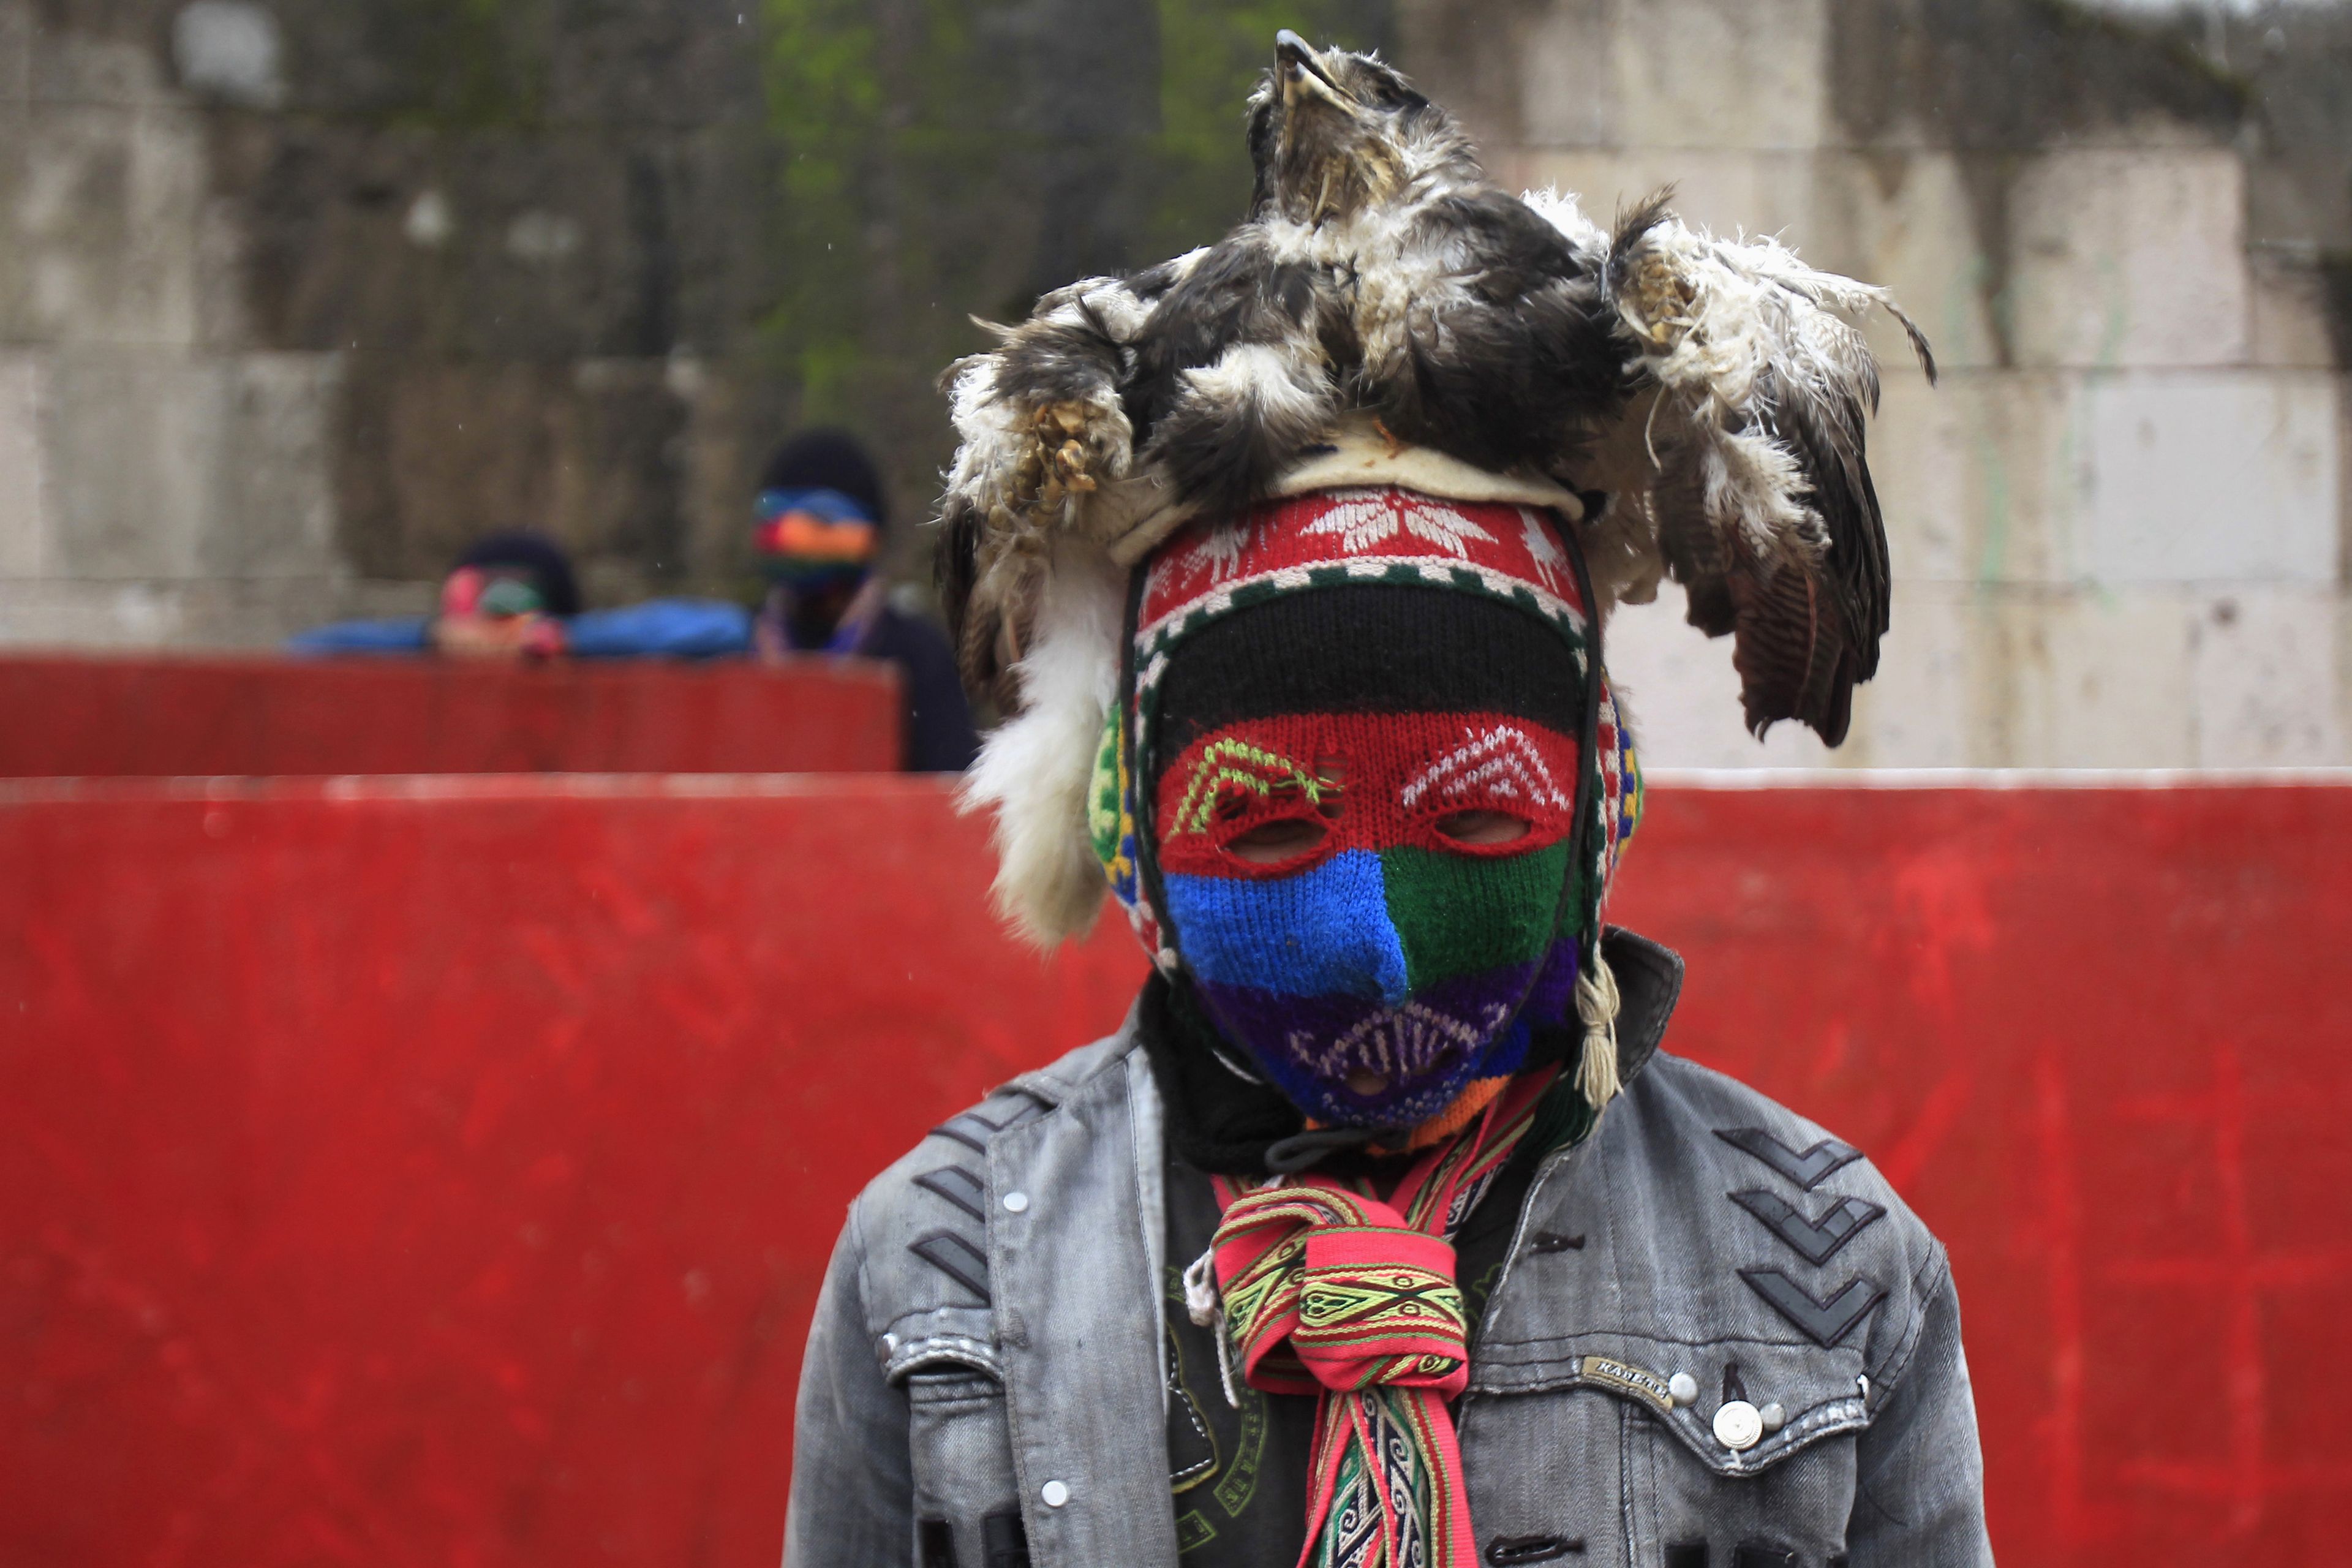 Un hombre vestido con una máscara antes de participar en una pelea durante el "Takanakuy", fiesta tradicional en la provincia de Chumbivilcas en Cuzco